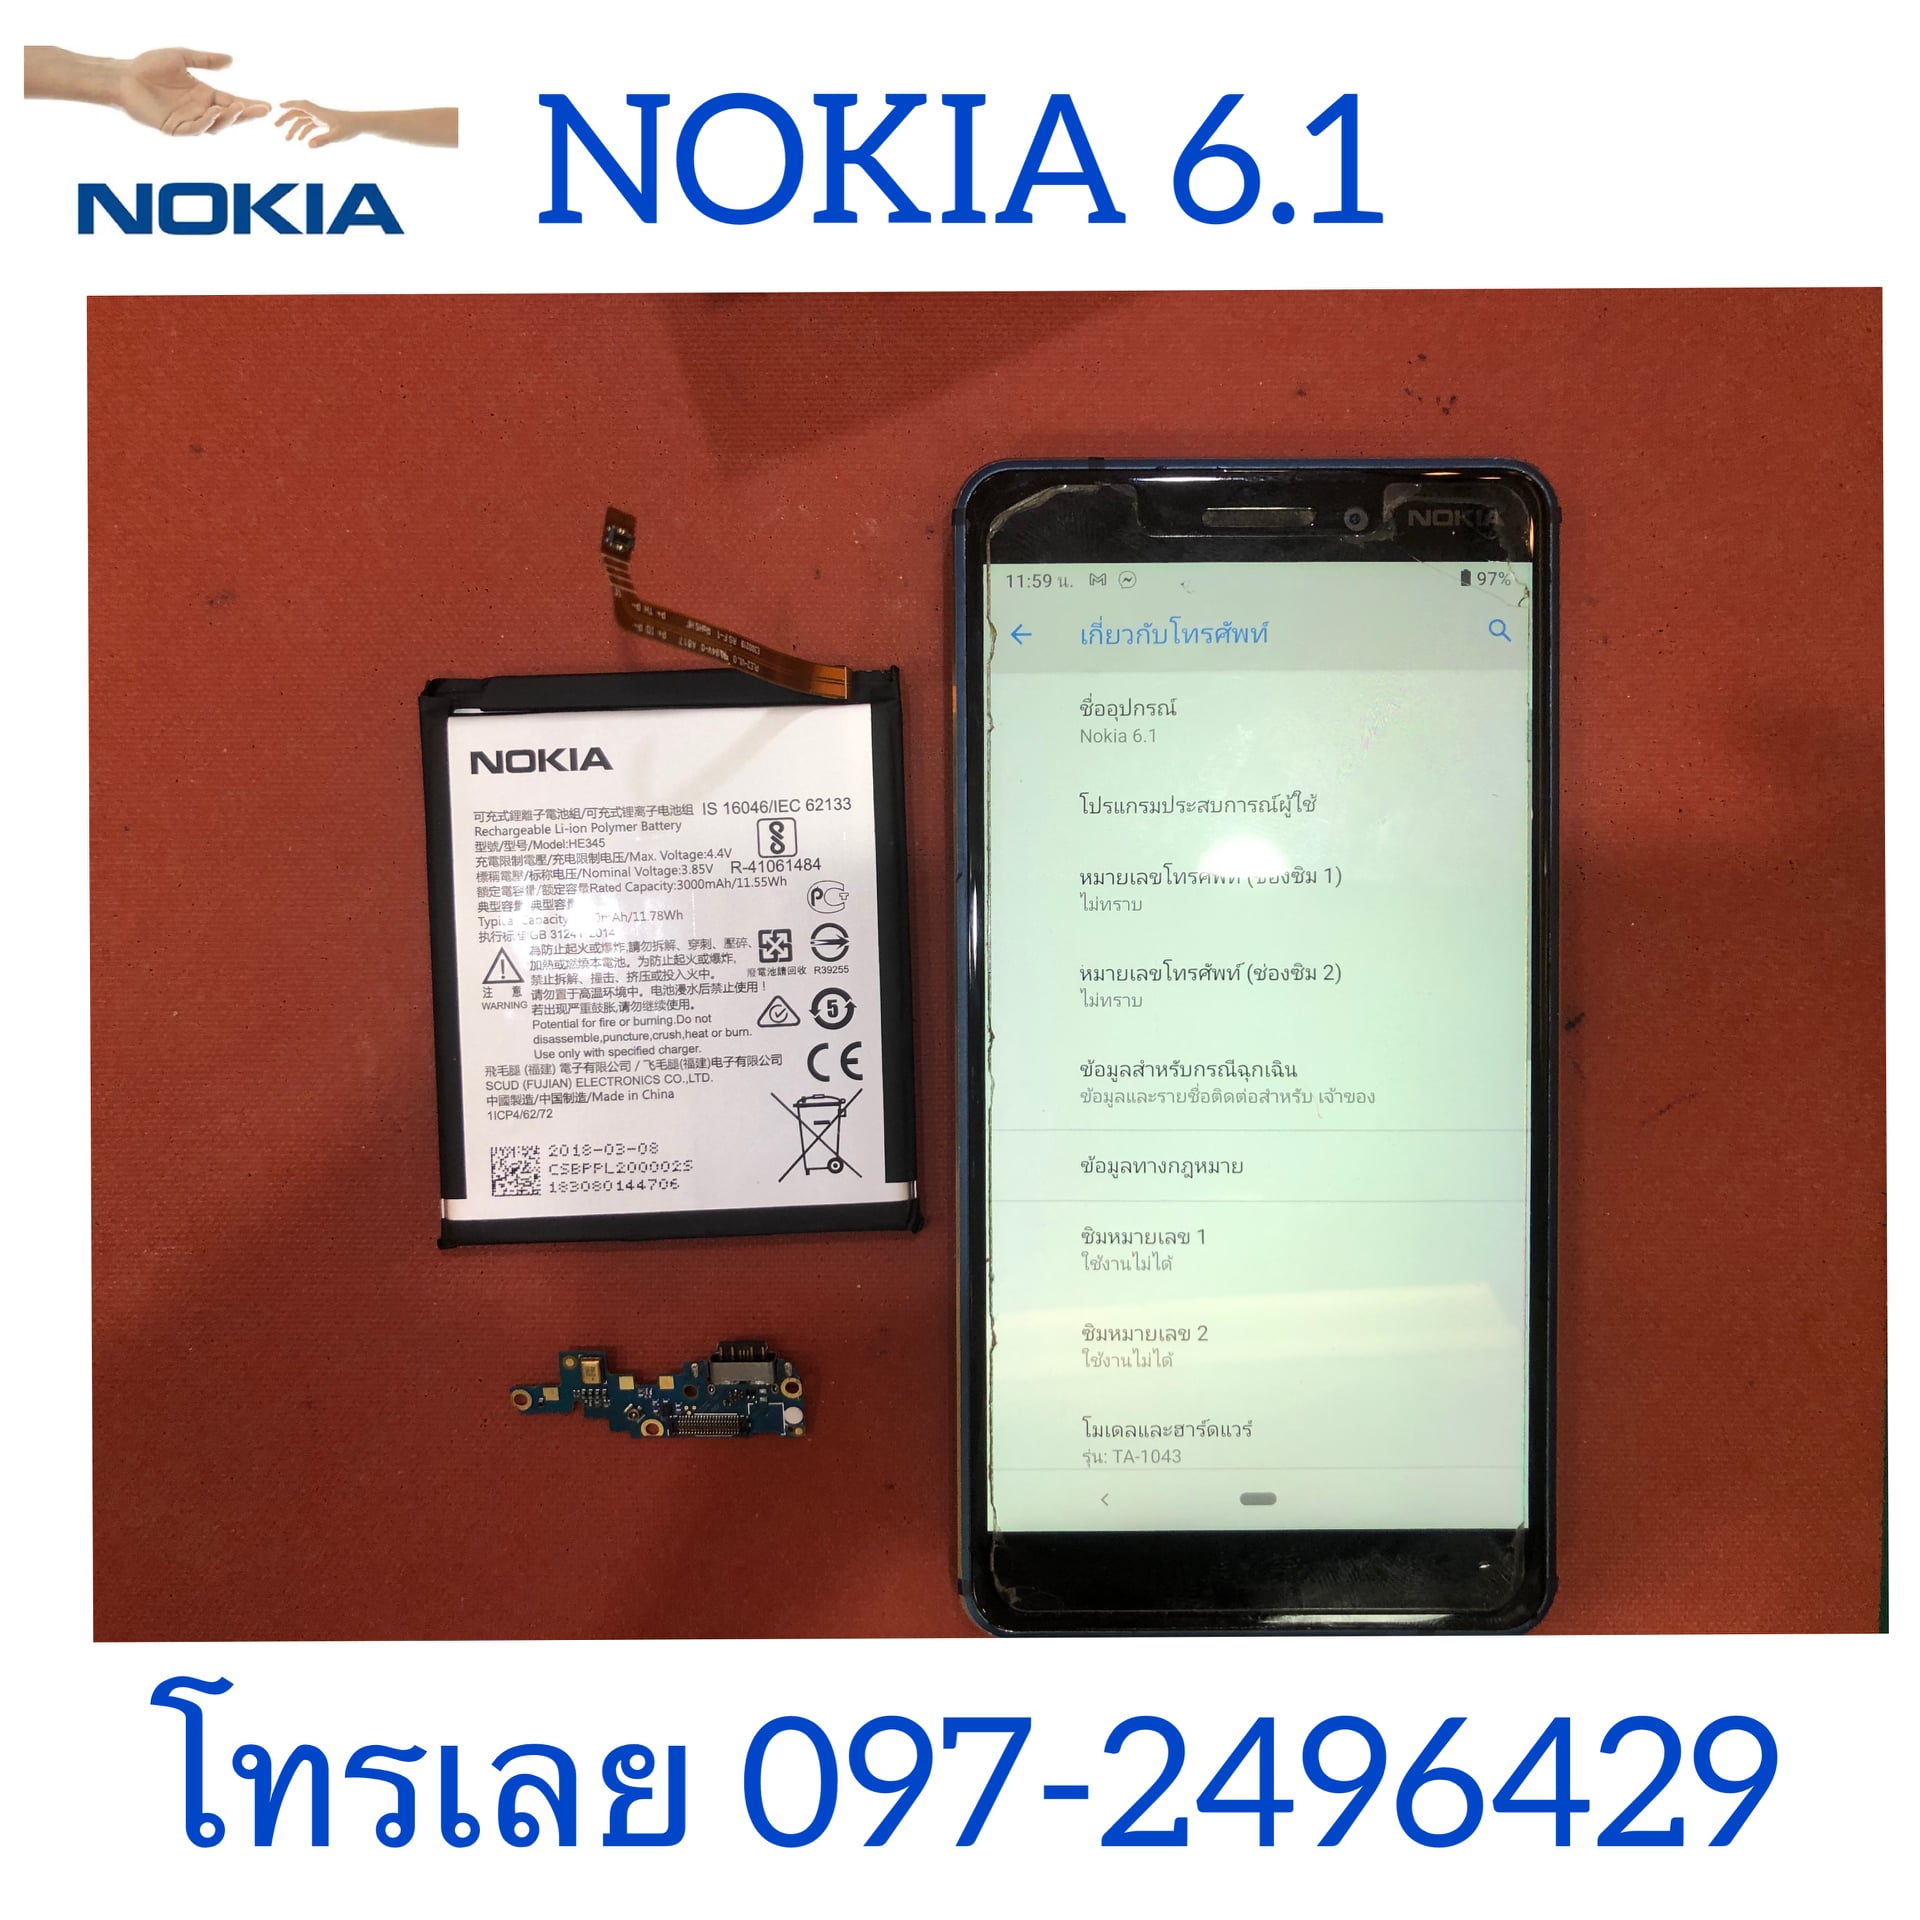 โทรศัพท์ยี่ห้อ  Nokia (โนเกีย)  มีอาการเสียอย่างไรบ้าง ซ่อมร้านไหนดี มีการรับประกัน